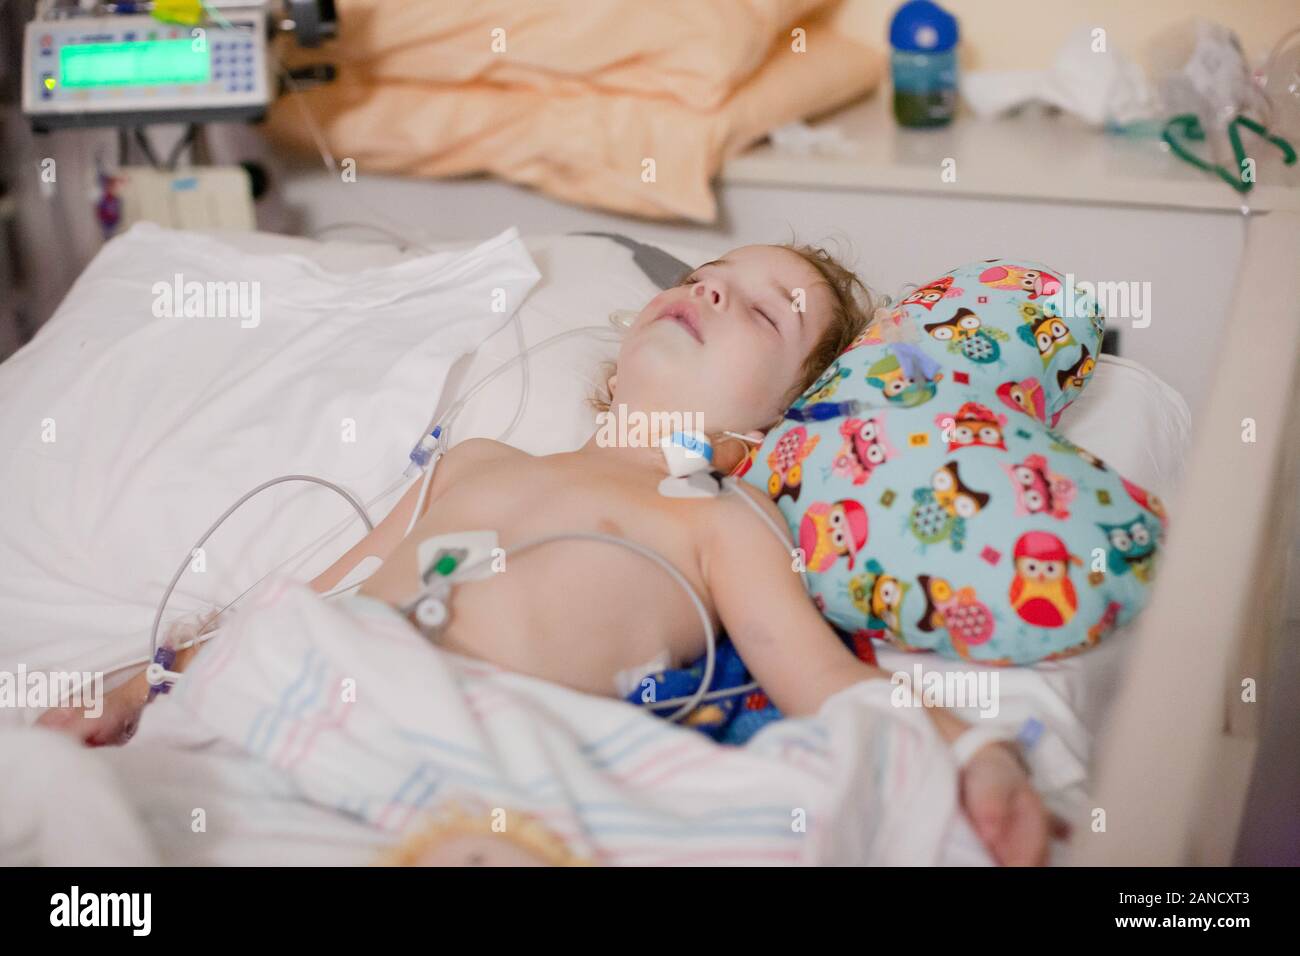 Un enfant se joue dans le lit d'hôpital après une intervention chirurgicale accrochée à la ligne centrale. Banque D'Images